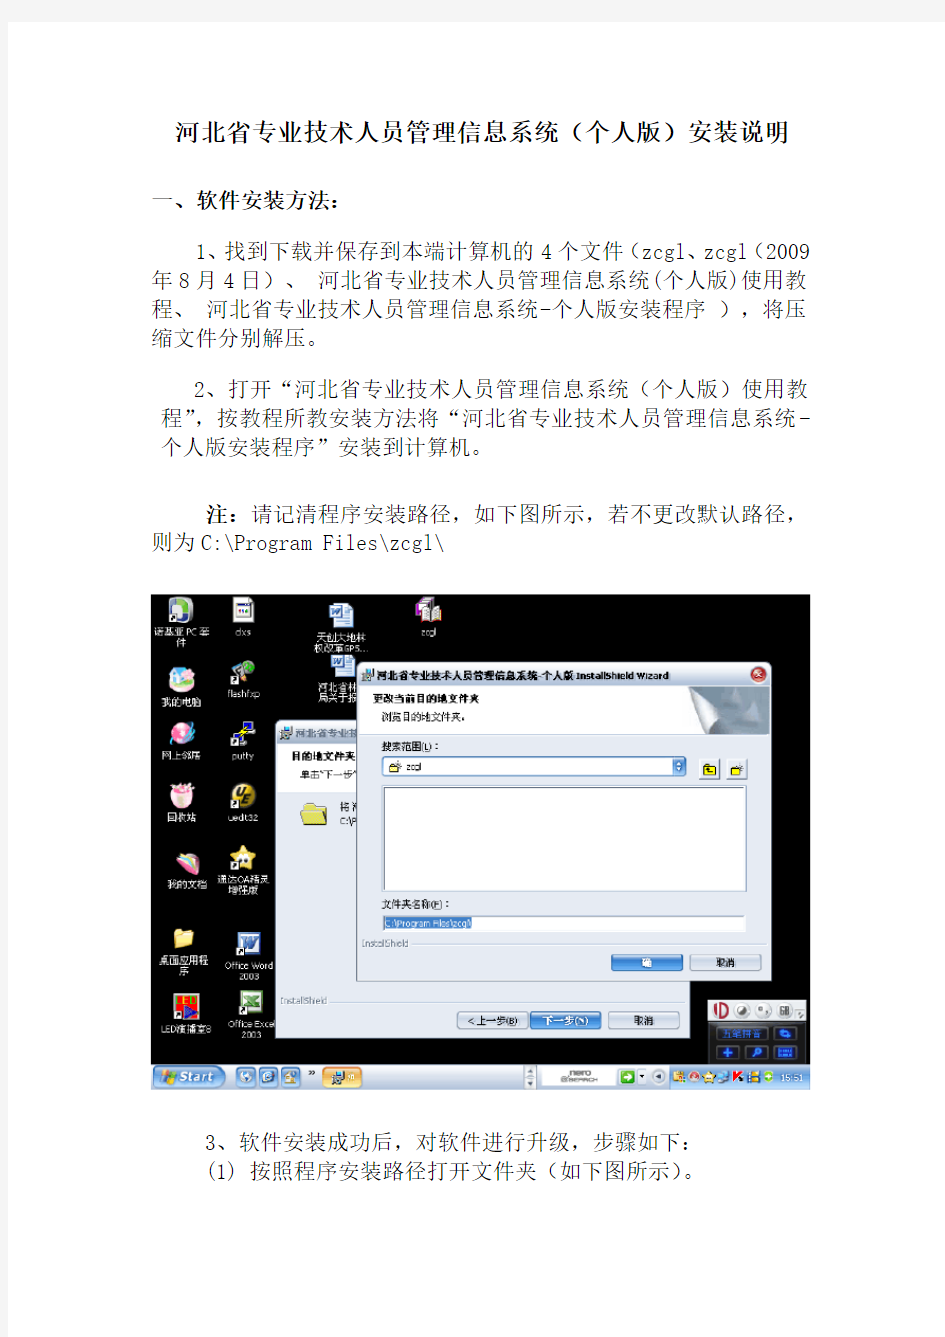 河北省专业技术人员管理信息系统个人版安装说明